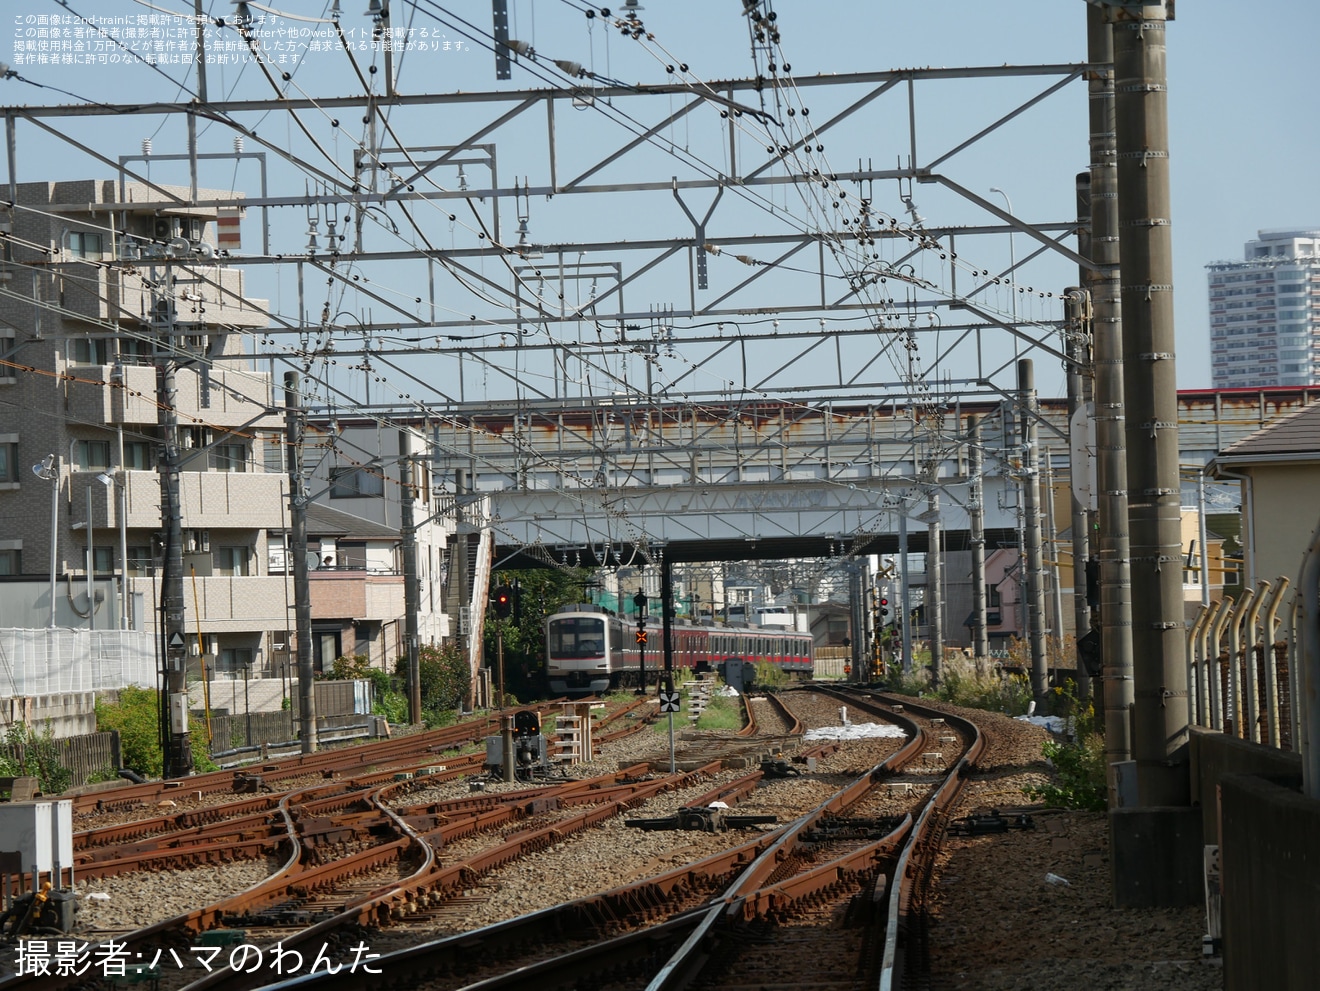 【相鉄】二俣川駅の鶴ヶ峰方にある引き上げ線が撤去の拡大写真